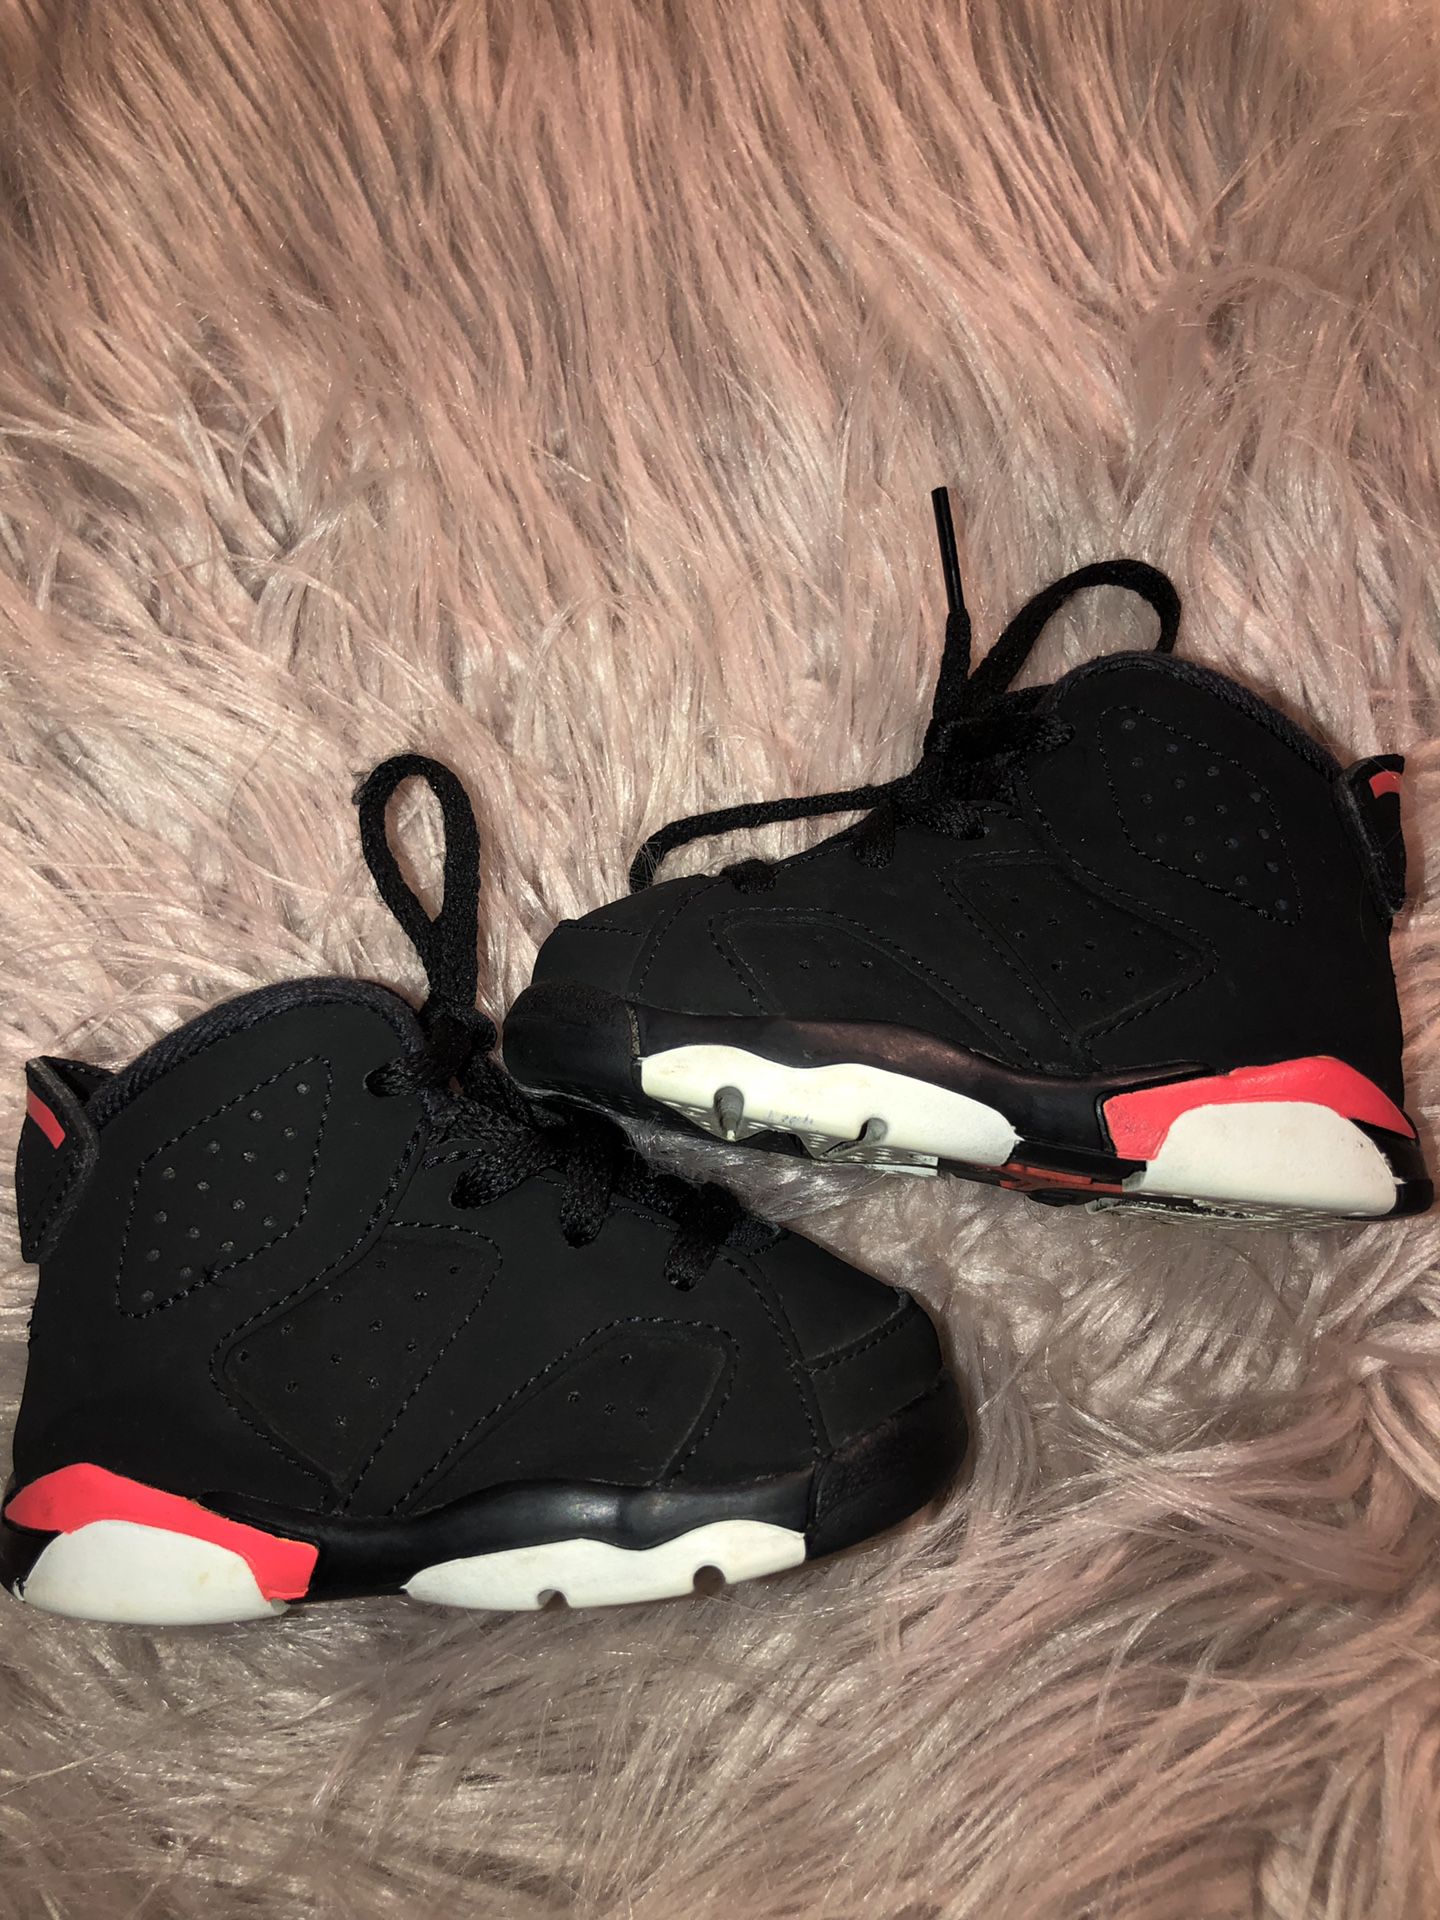 Size 4c Jordan’s